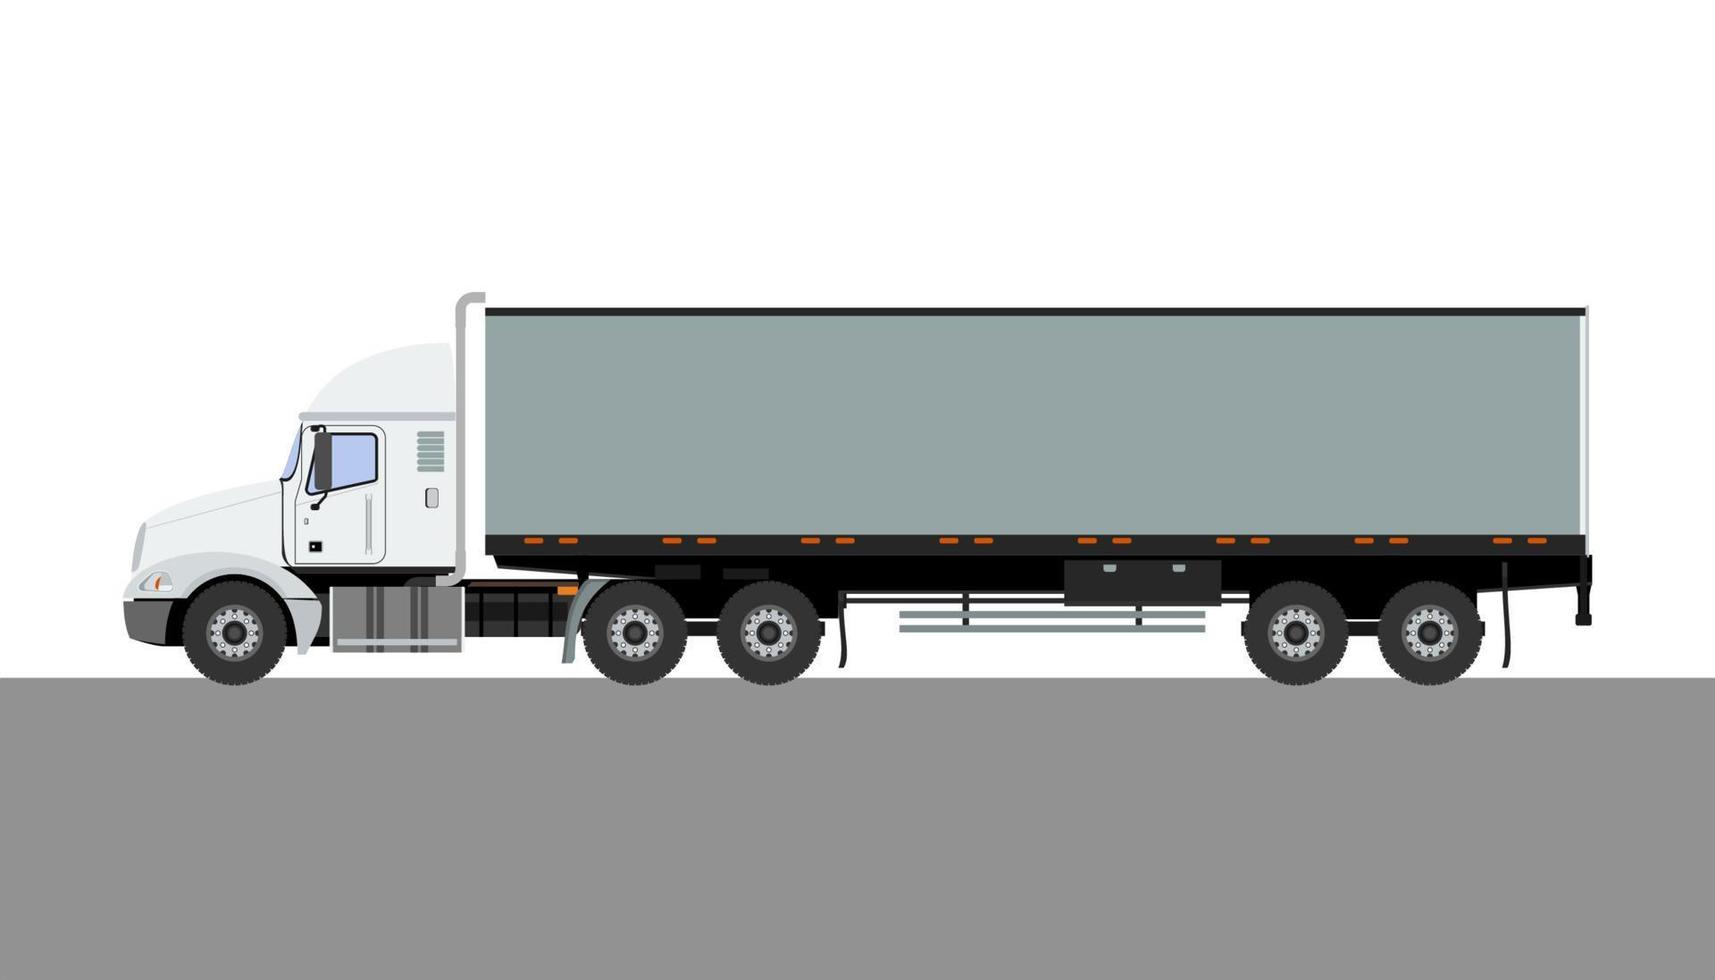 vue latérale modifiable illustration vectorielle de camion remorque grise détaillée pour la conception liée au transport de véhicule ou d'expédition. peut être utilisé comme maquette vecteur